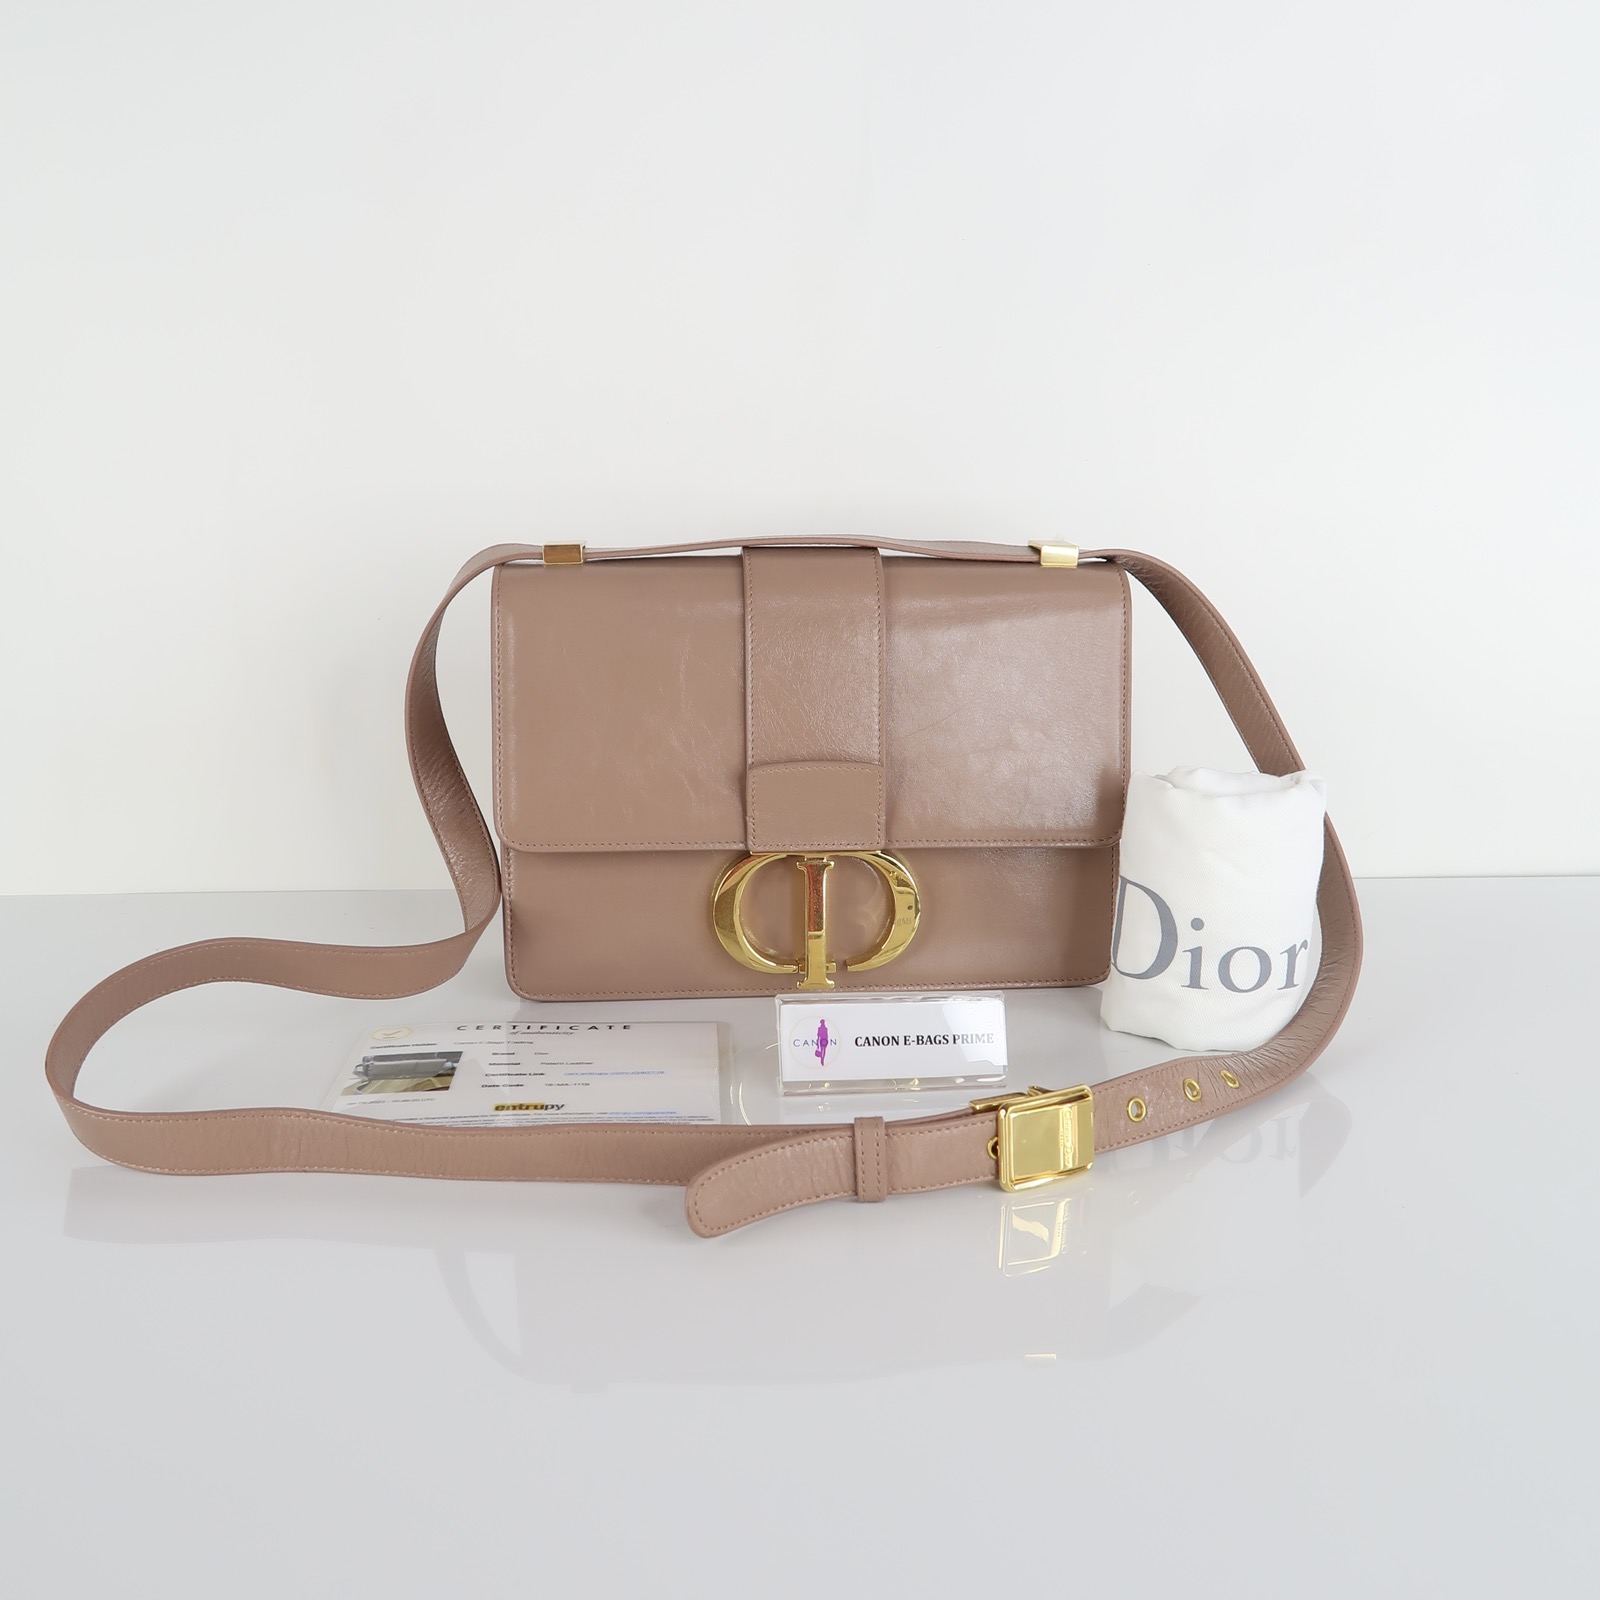 Christian Dior Archives - Canon E-Bags Prime